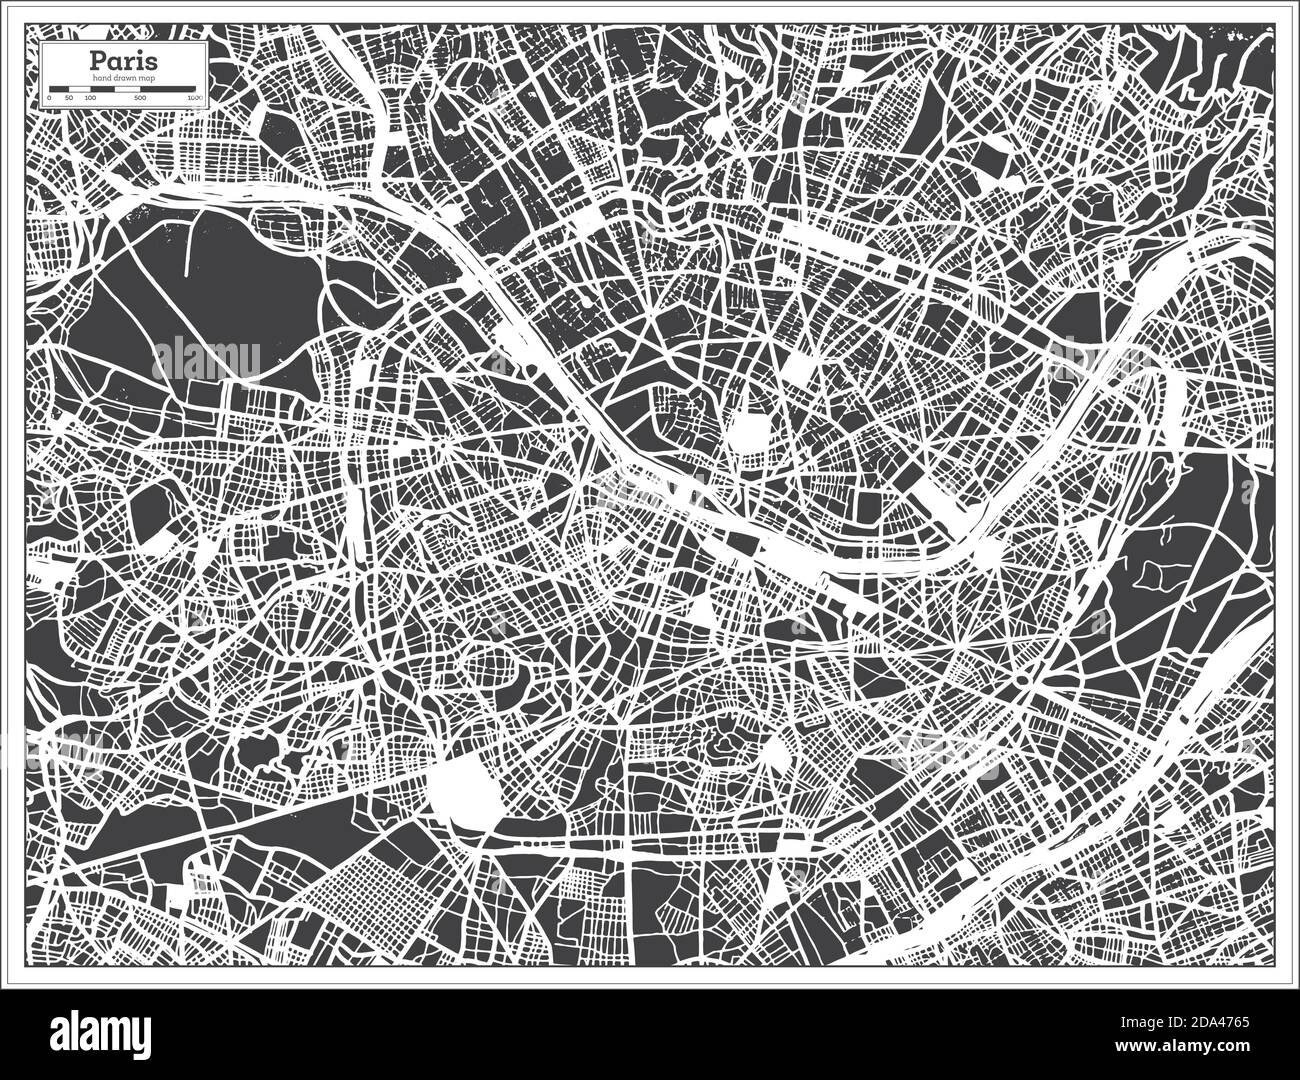 Paris France carte de la ville en noir et blanc en style rétro. Carte de contour. Illustration vectorielle. Illustration de Vecteur